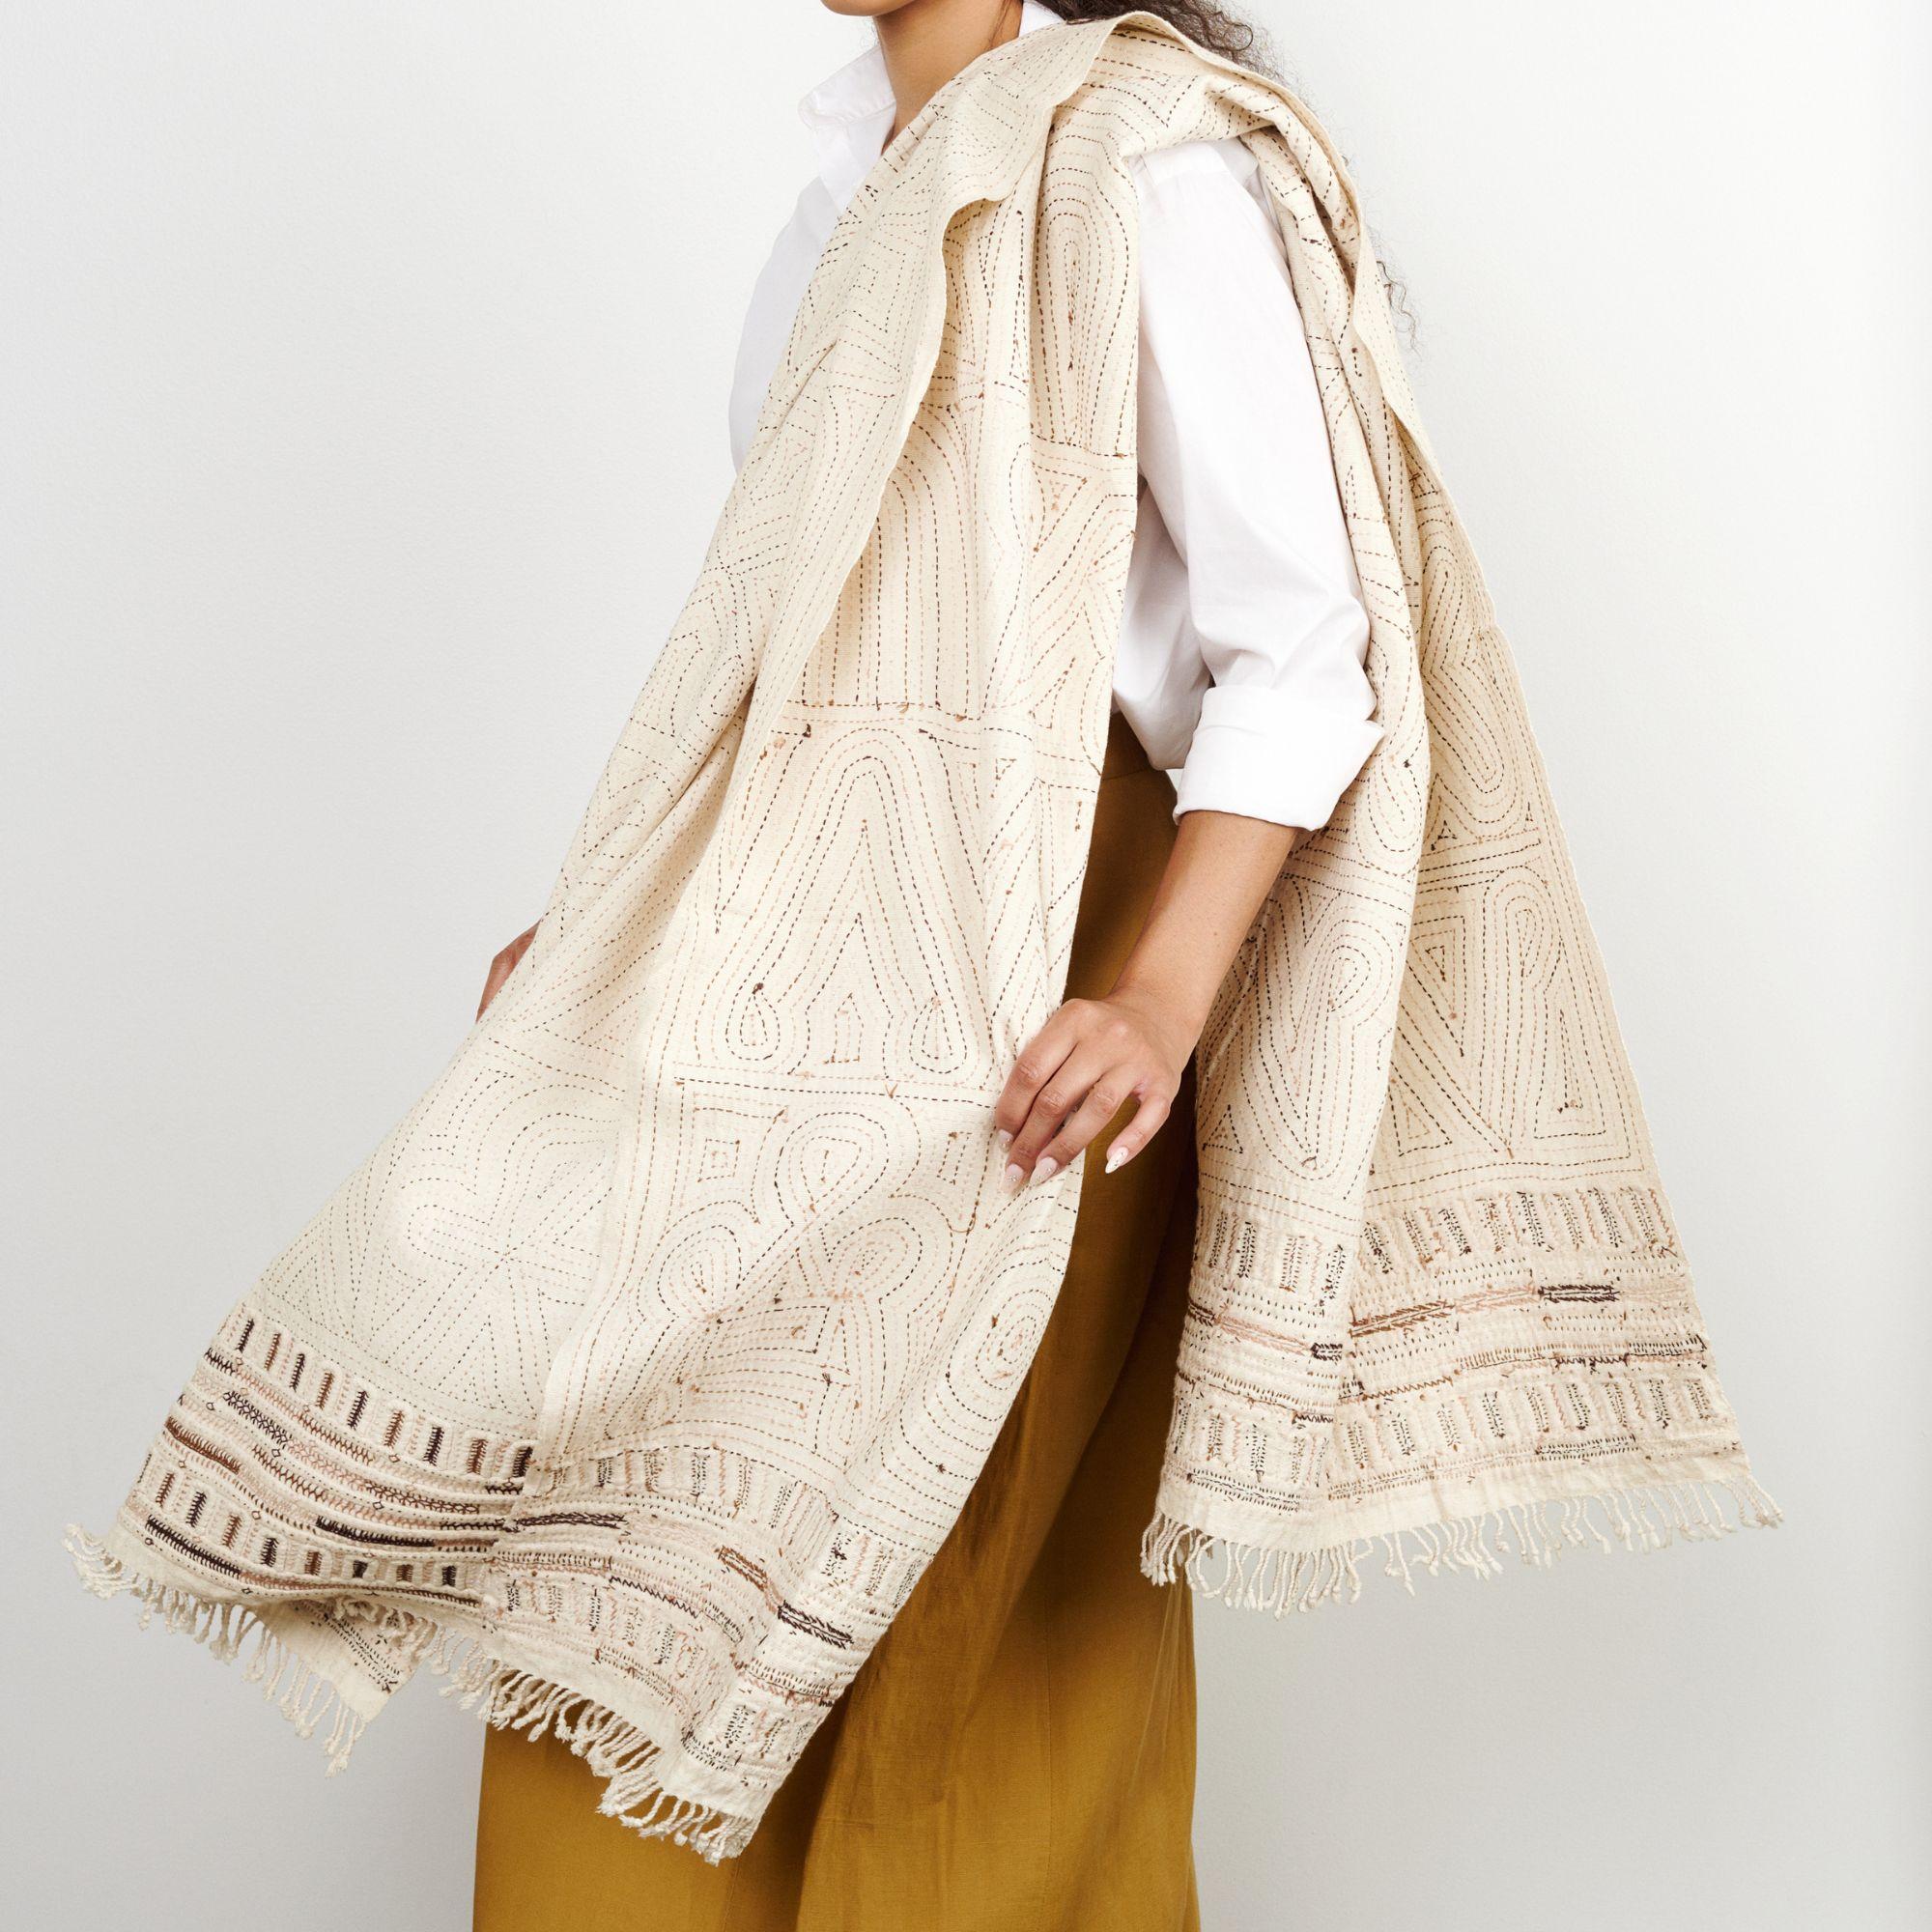 Unah ist ein vollständig besticktes Tuch mit einer einzigartigen, wunderschönen Handarbeit, die die Ränder in bunten Tönen hervorhebt. Hinter diesem Stück steht eine einzigartige Gruppe von Kunsthandwerkerinnen in Indien. Diese besondere Technik ist